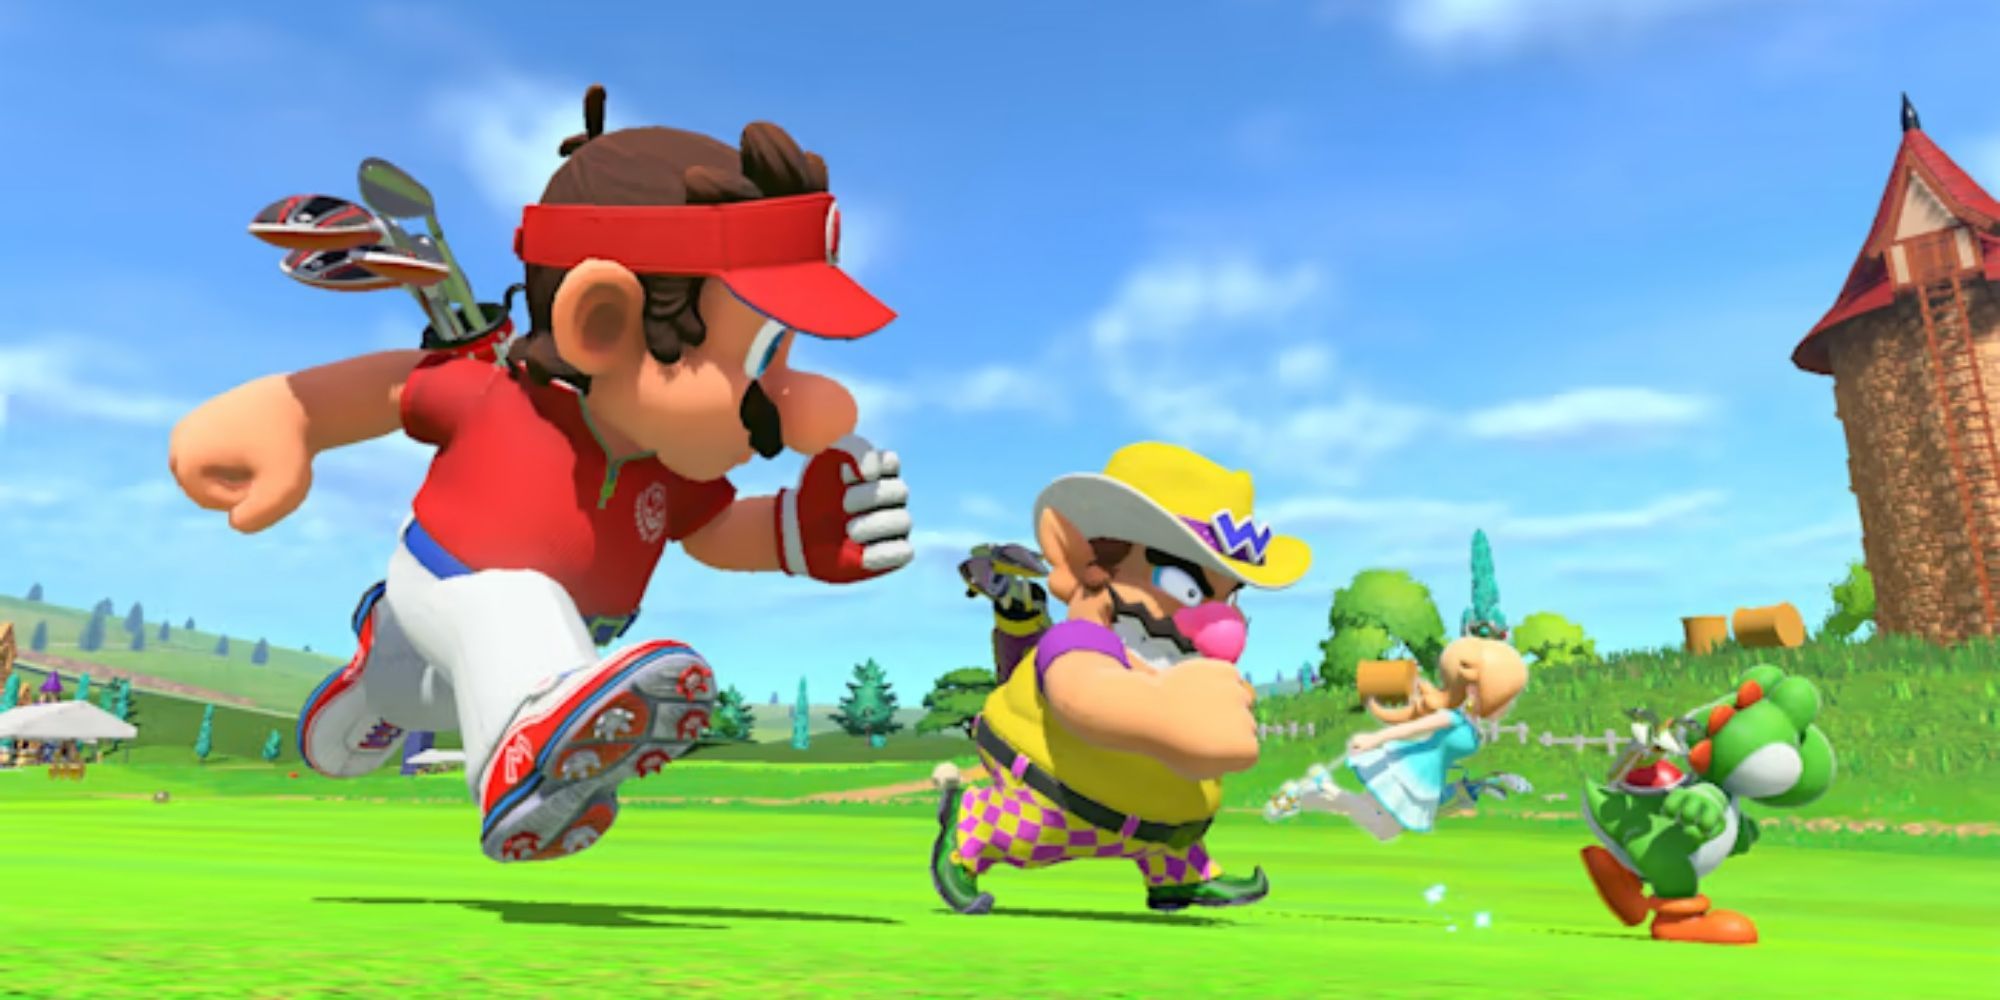 Mario, Wario, Yoshi, Rosalina run across the golf course on a sunny day